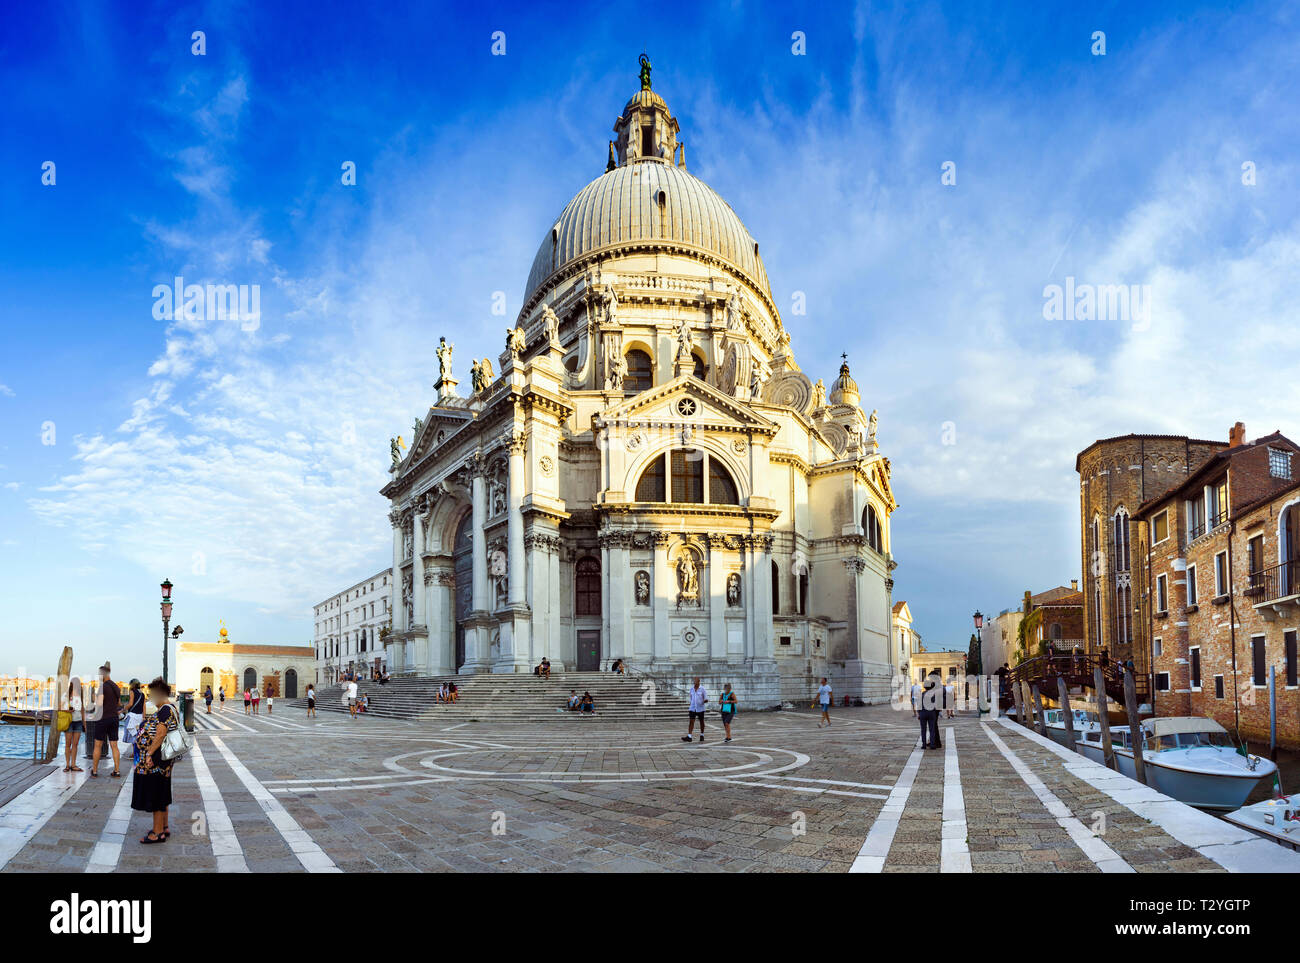 Basilica of Santa Maria de la Salud, Venice, Italy Stock Photo